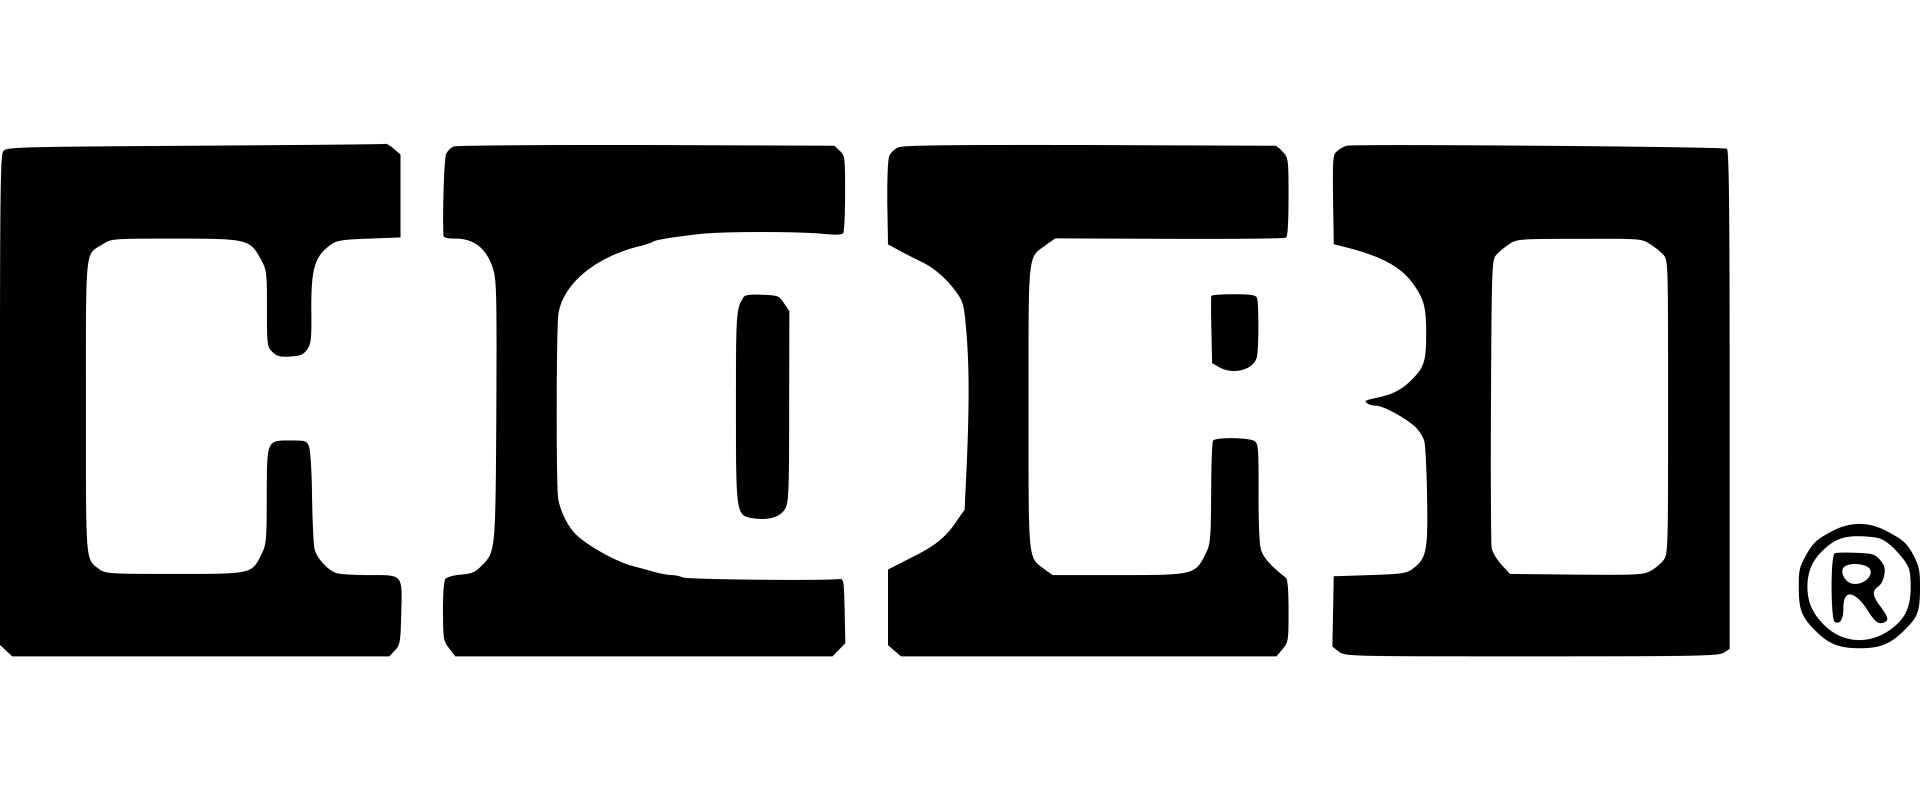 ΗΟRΙ (ΝSW-295U) SΡLΙΤ ΡΑD ΡRΟ (ΡΙΚΑCΗU ΒLΑCΚ & GΟLD ) FΟR ΝΙΝΤΕΝDΟ SWΙΤCΗ -  AMY α.ε